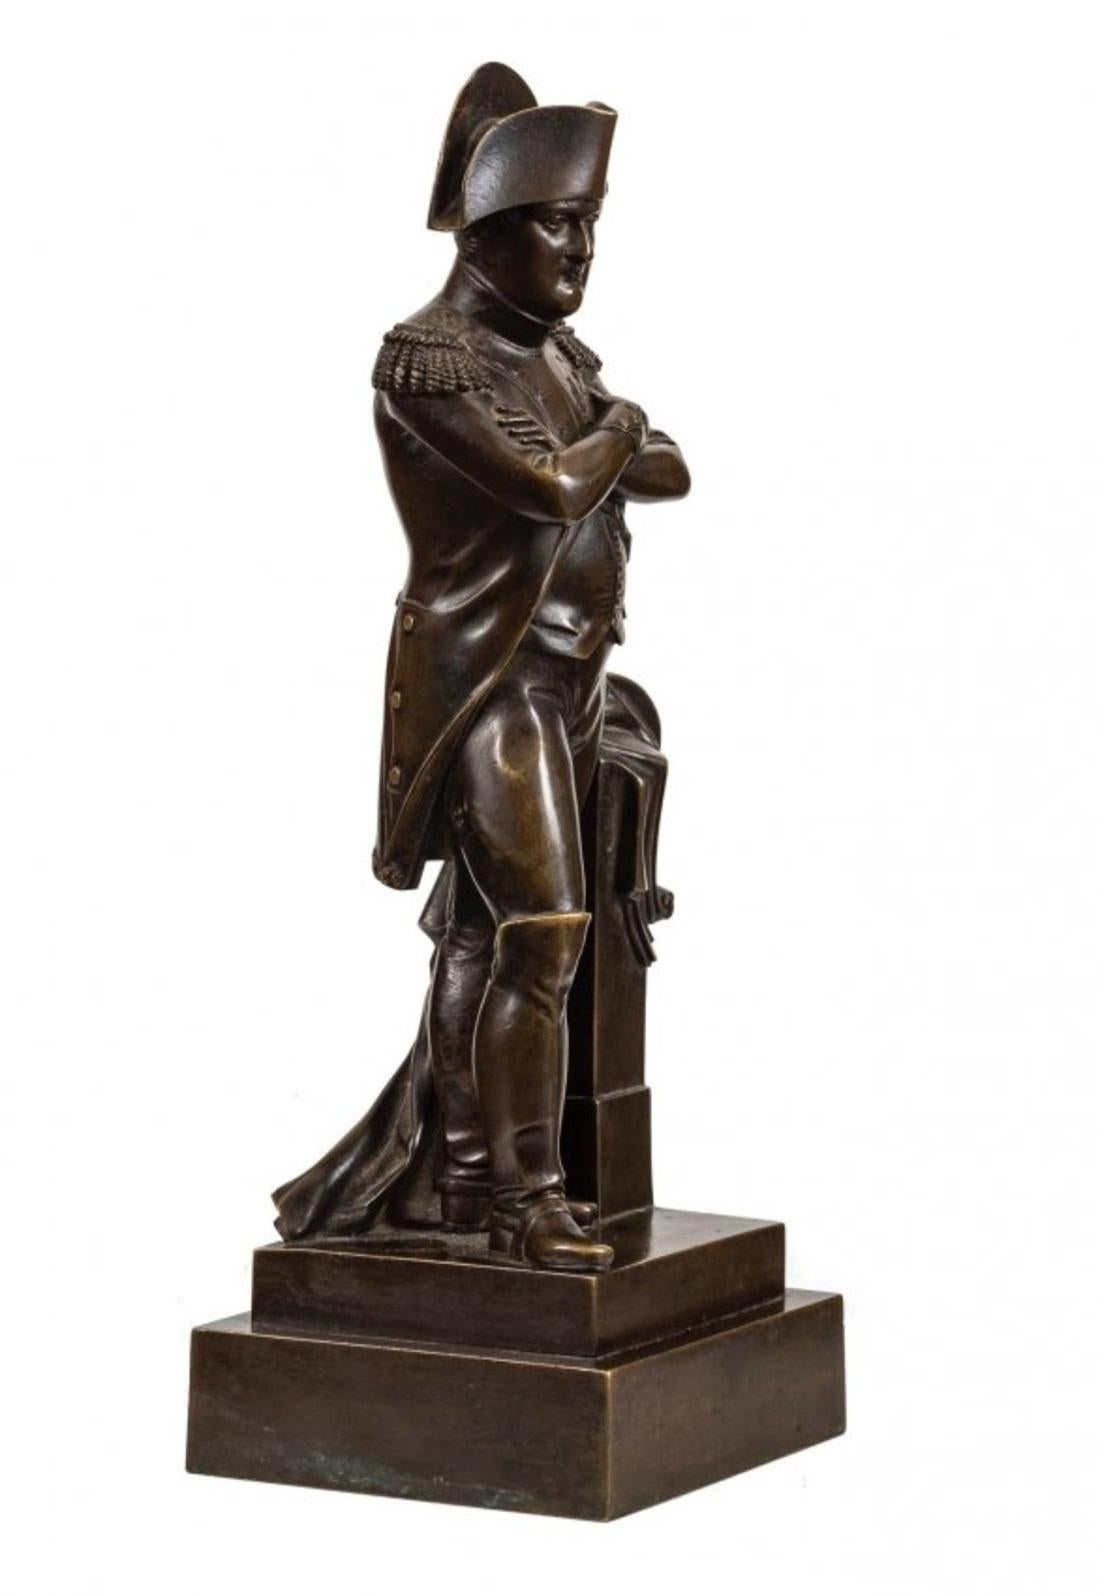 Patinierte Bronzeskulptur von Napoleon
19. Jahrhundert. Nicht signiert.
Bronze, braun patiniert
Maße: Höhe 10 1/4 Zoll (26,03 cm.)
Quadratische Basis 3 1/2 x 3 1/2 in. (8,89 x 8,89 cm.)
Provenienz: Doyle New York, Belle Epoque, Sale 0306041 -